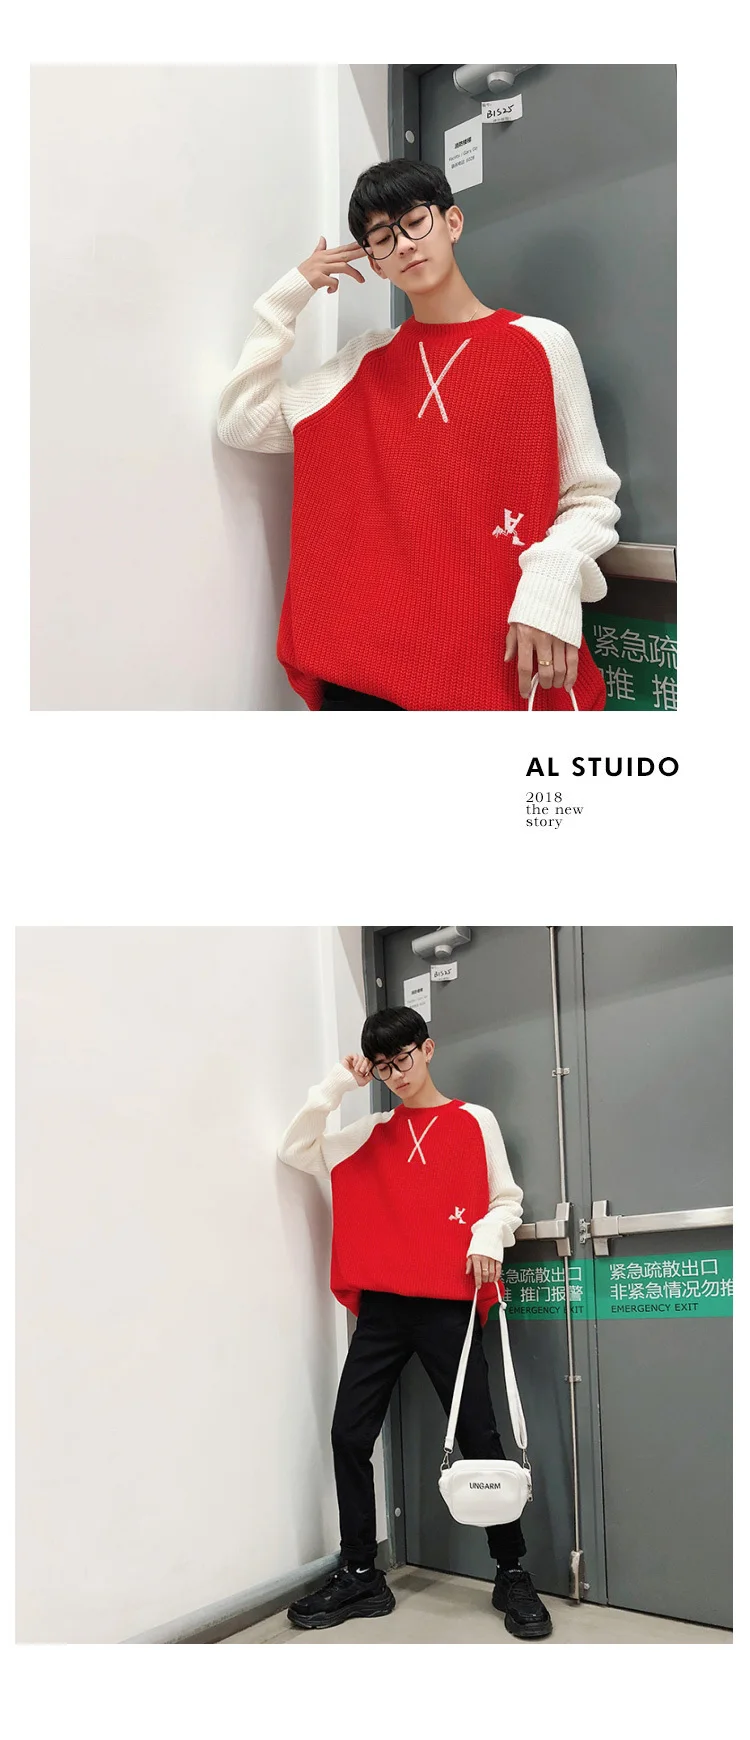 2019 г. весна-лето новое поступление корейской моды хип-хоп пара красивый Цвет соответствующие шарф с принтом свитер M-2XL Размеры